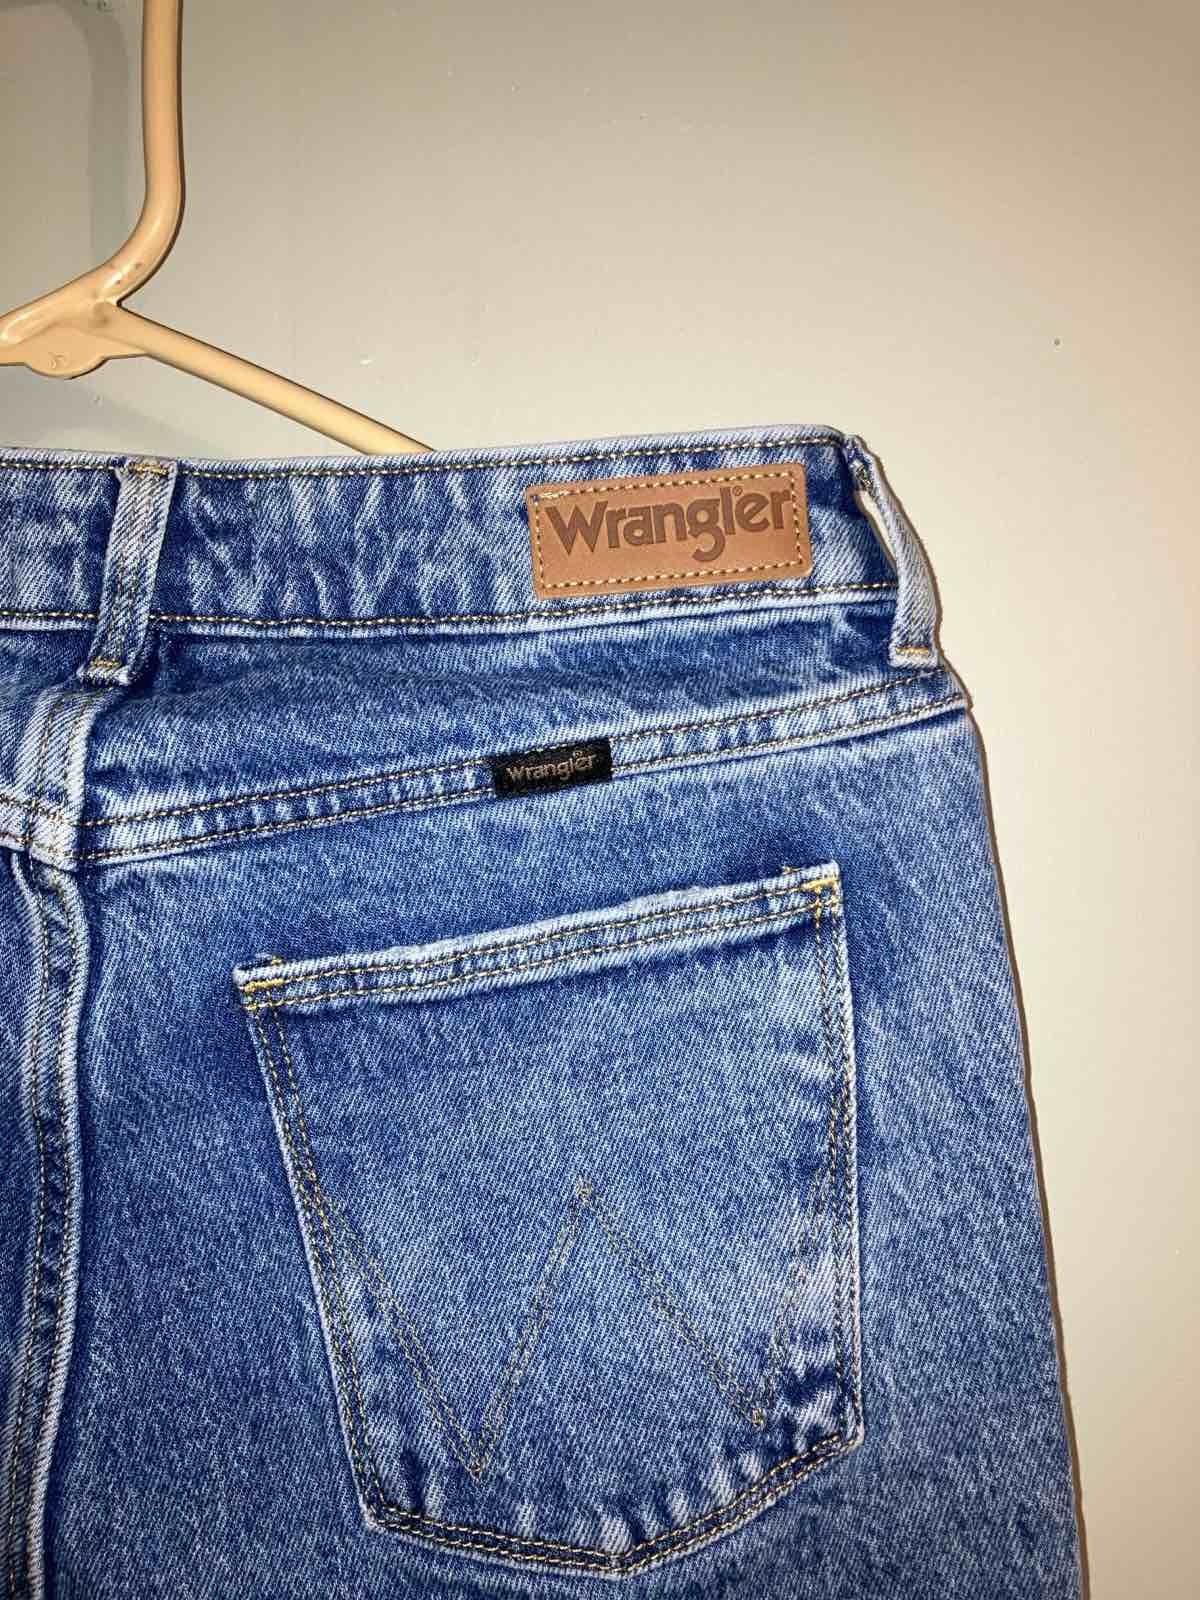 wrangler usa  джинсы   28*32новые.